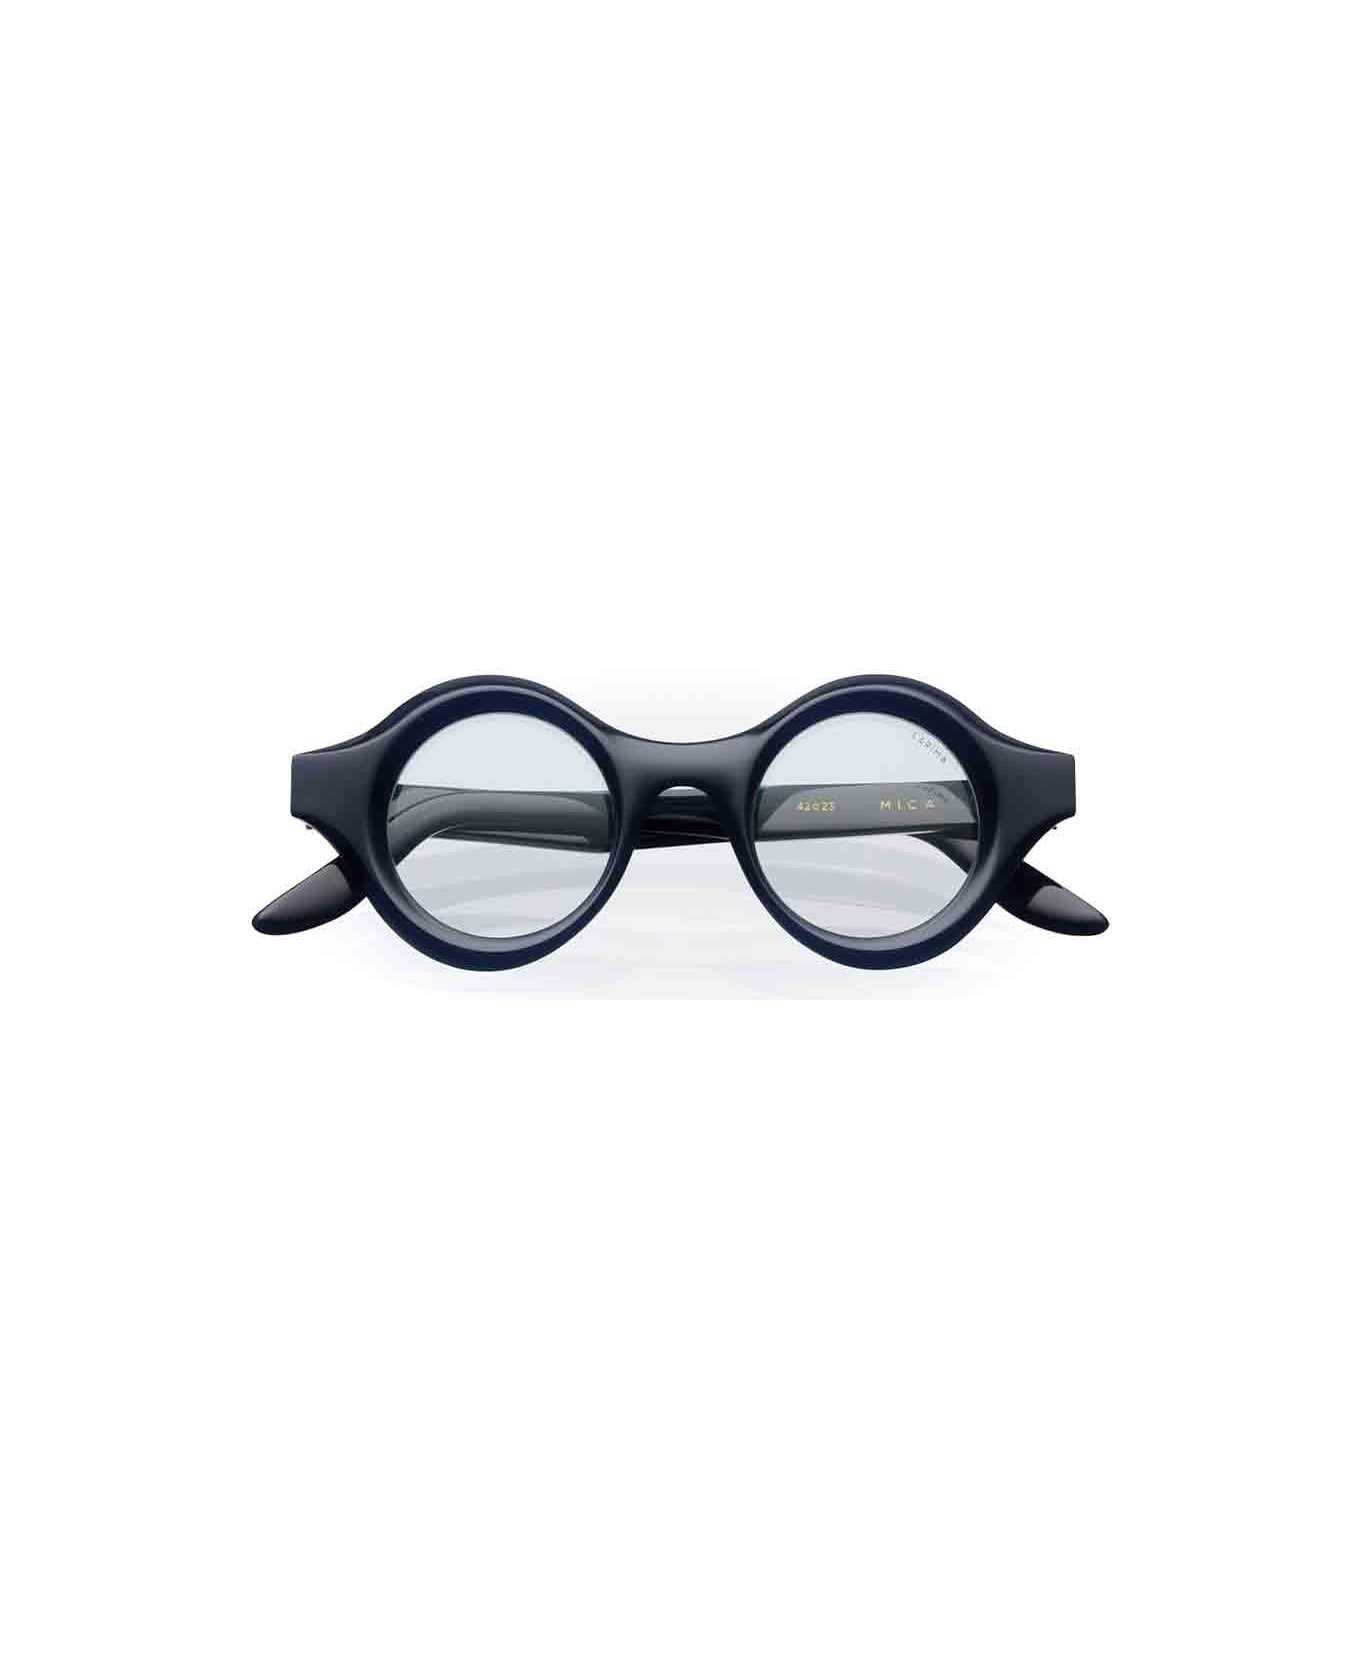 Lapima Eyewear - Blu アイウェア